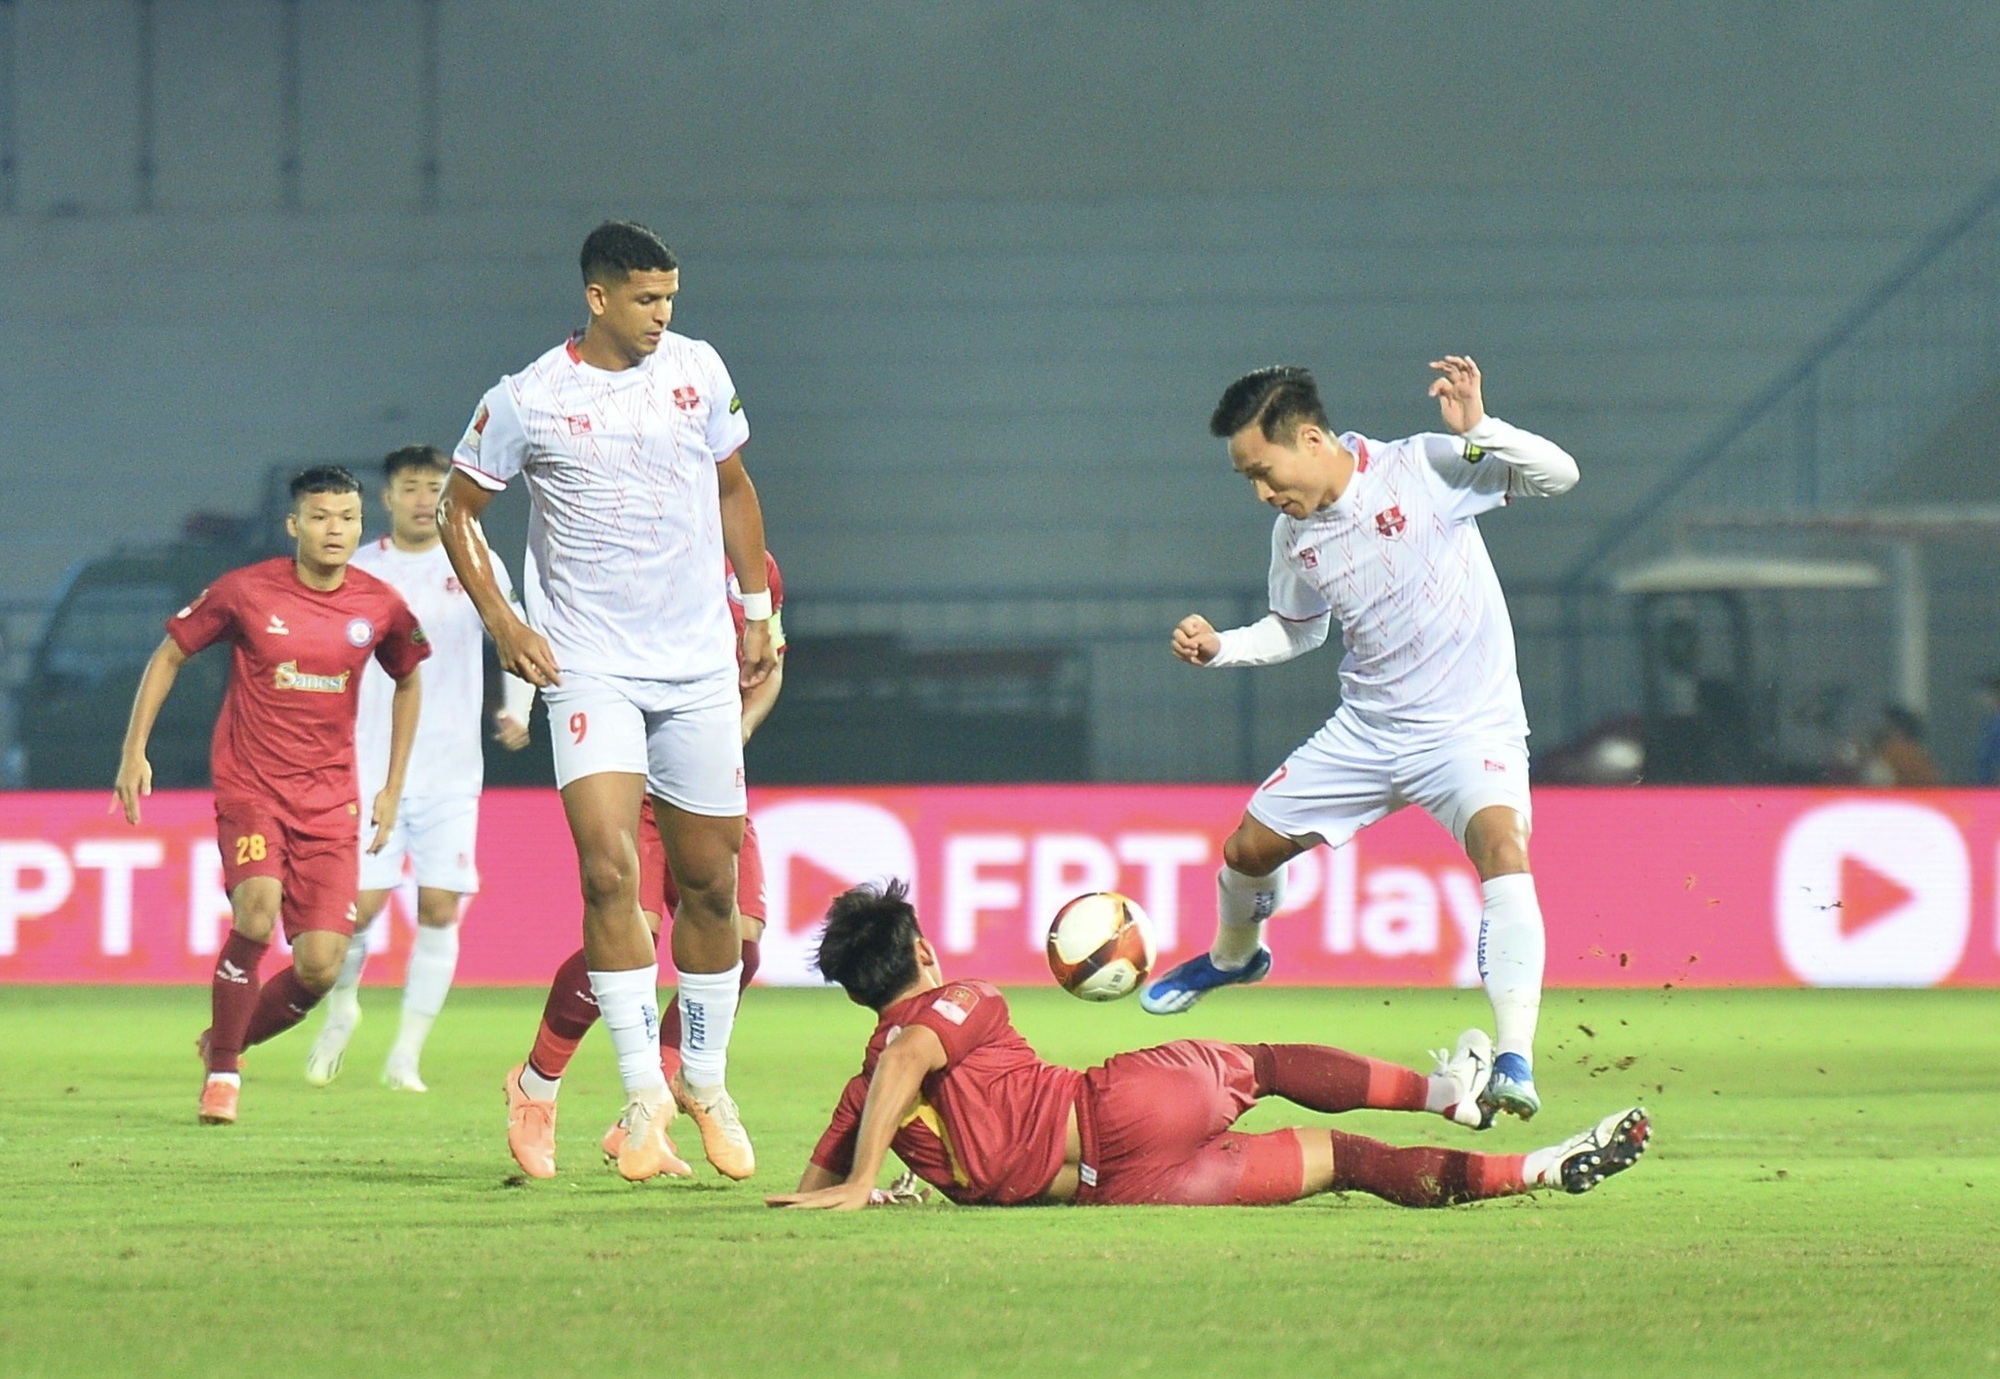 V-League: CLB Khánh Hòa chơi hay, đội Hải Phòng ngược dòng ấn tượng để vào tốp 4 - Ảnh 1.